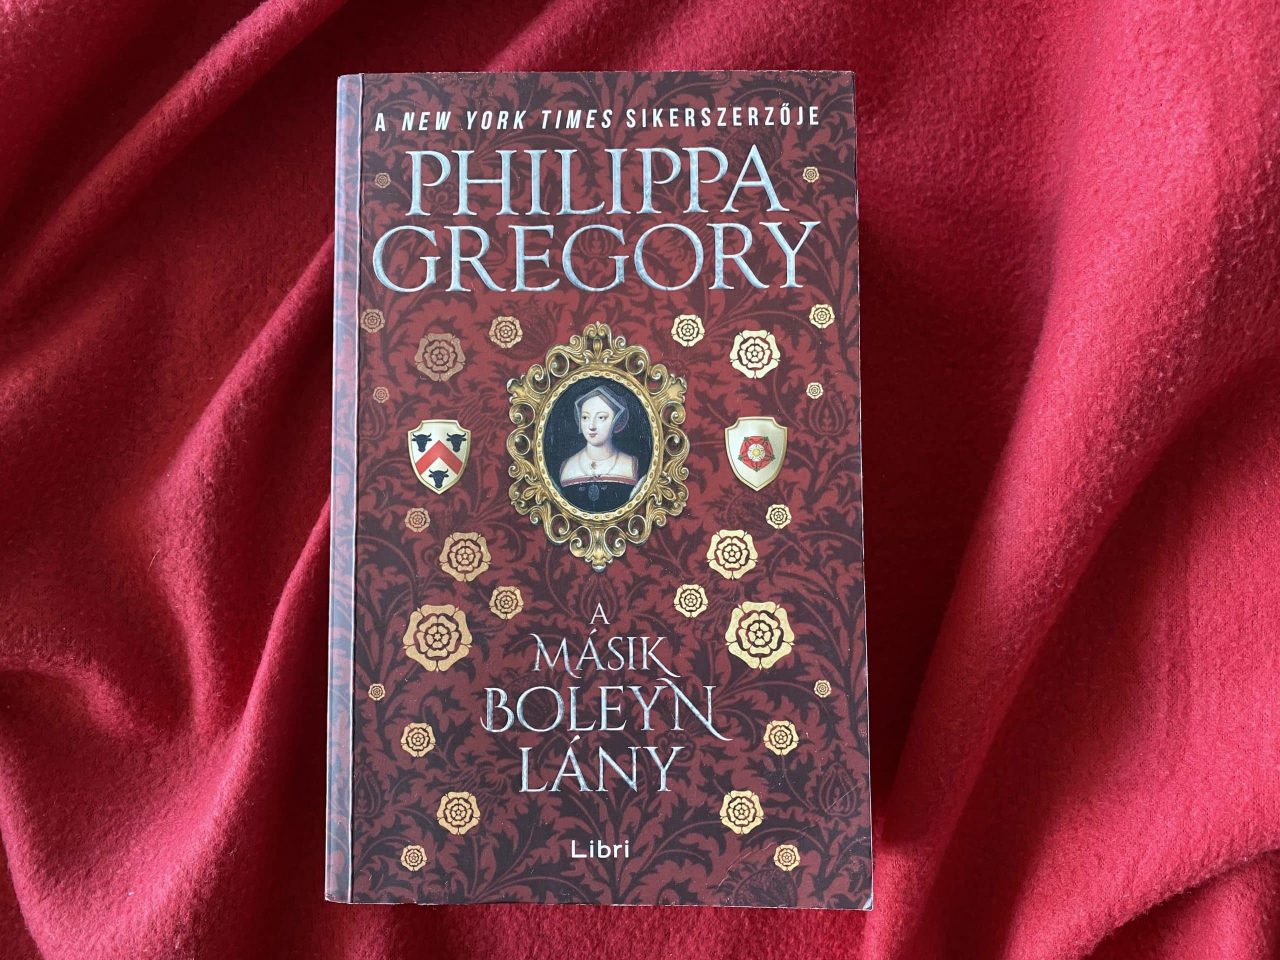 Philippa Gregory: A másik Boleyn lány c. kötete a kihasznált nők szívfacsaró áriája